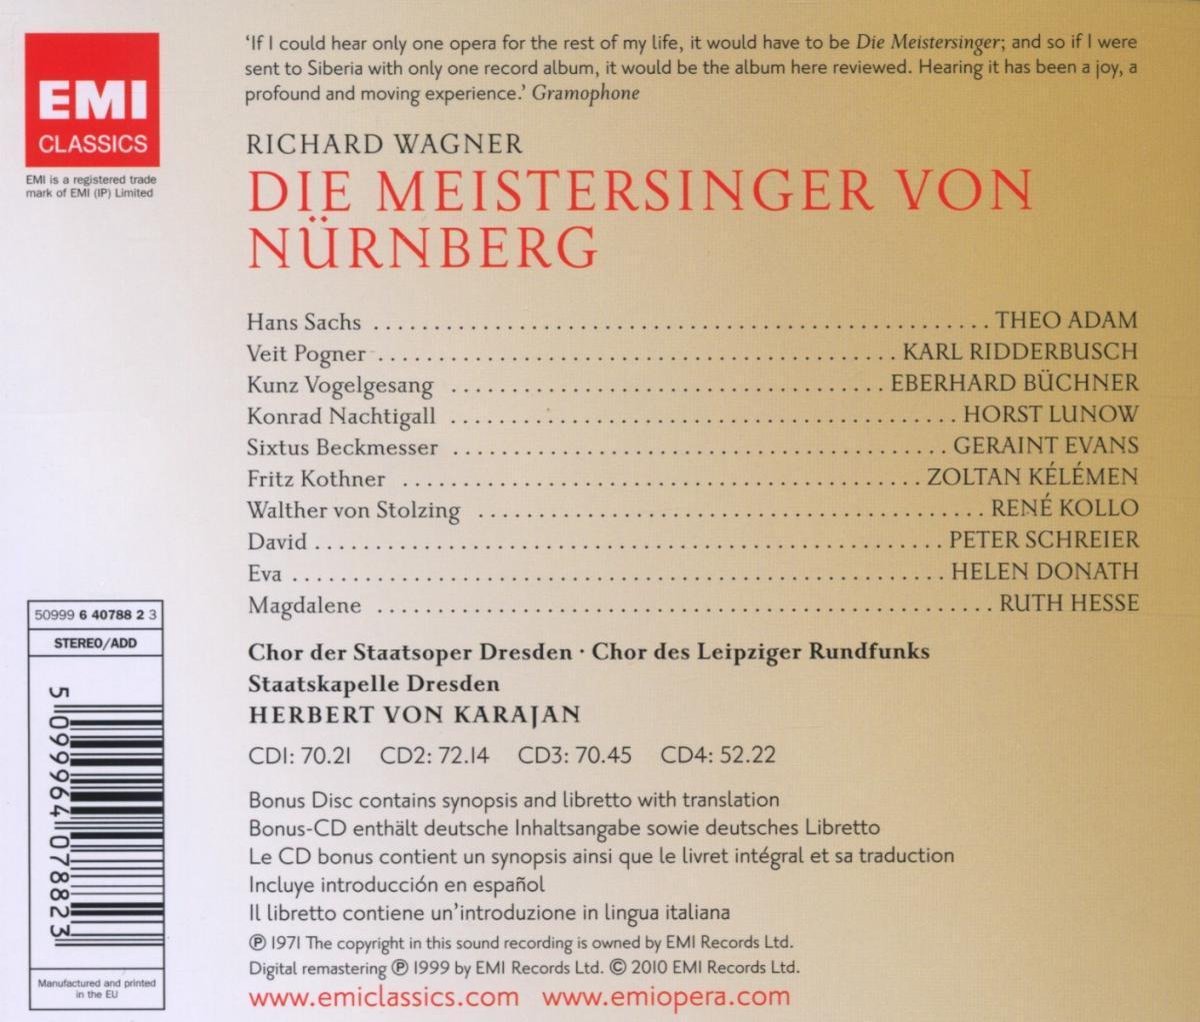 Die Meistersinger von Nurnberg | Richard Wagner, Herbert von Karajan, Theo Adam